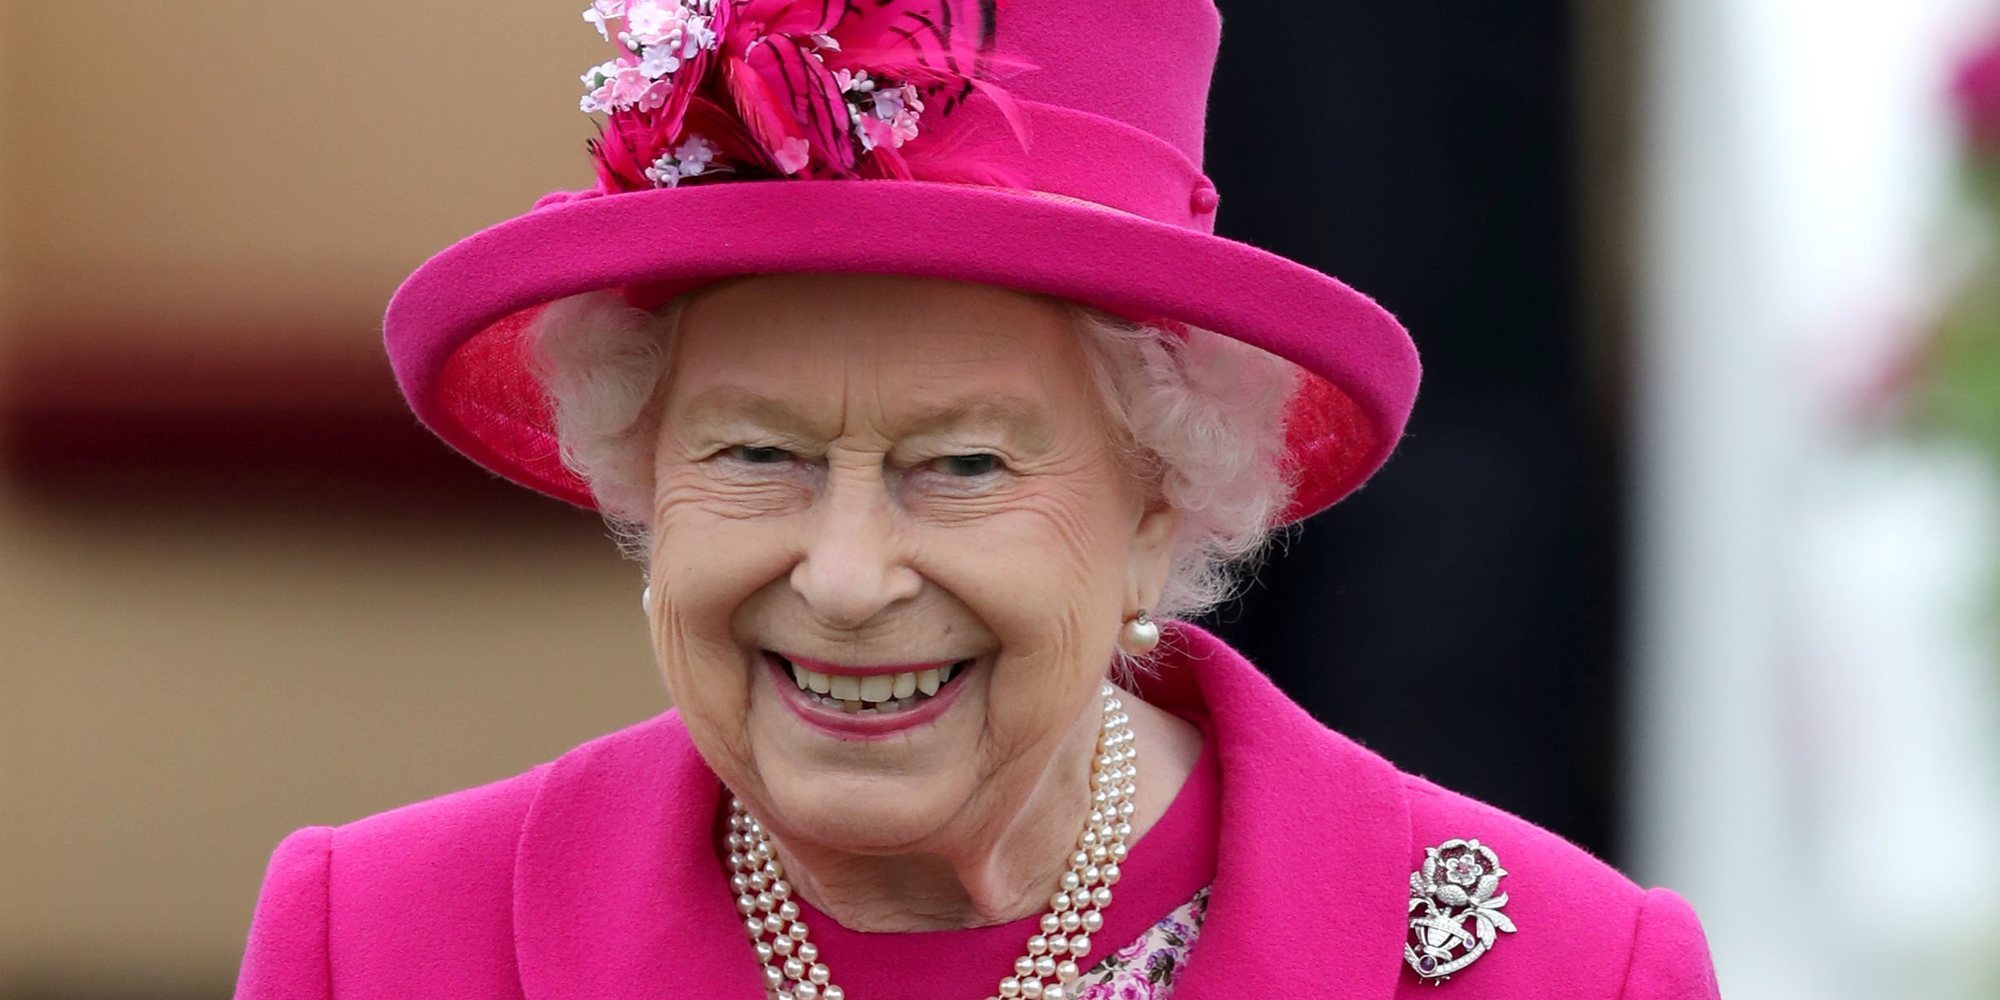 La Reina Isabel II, golpeada en la cara por un pañuelo mientras disfrutaba de un partido de polo